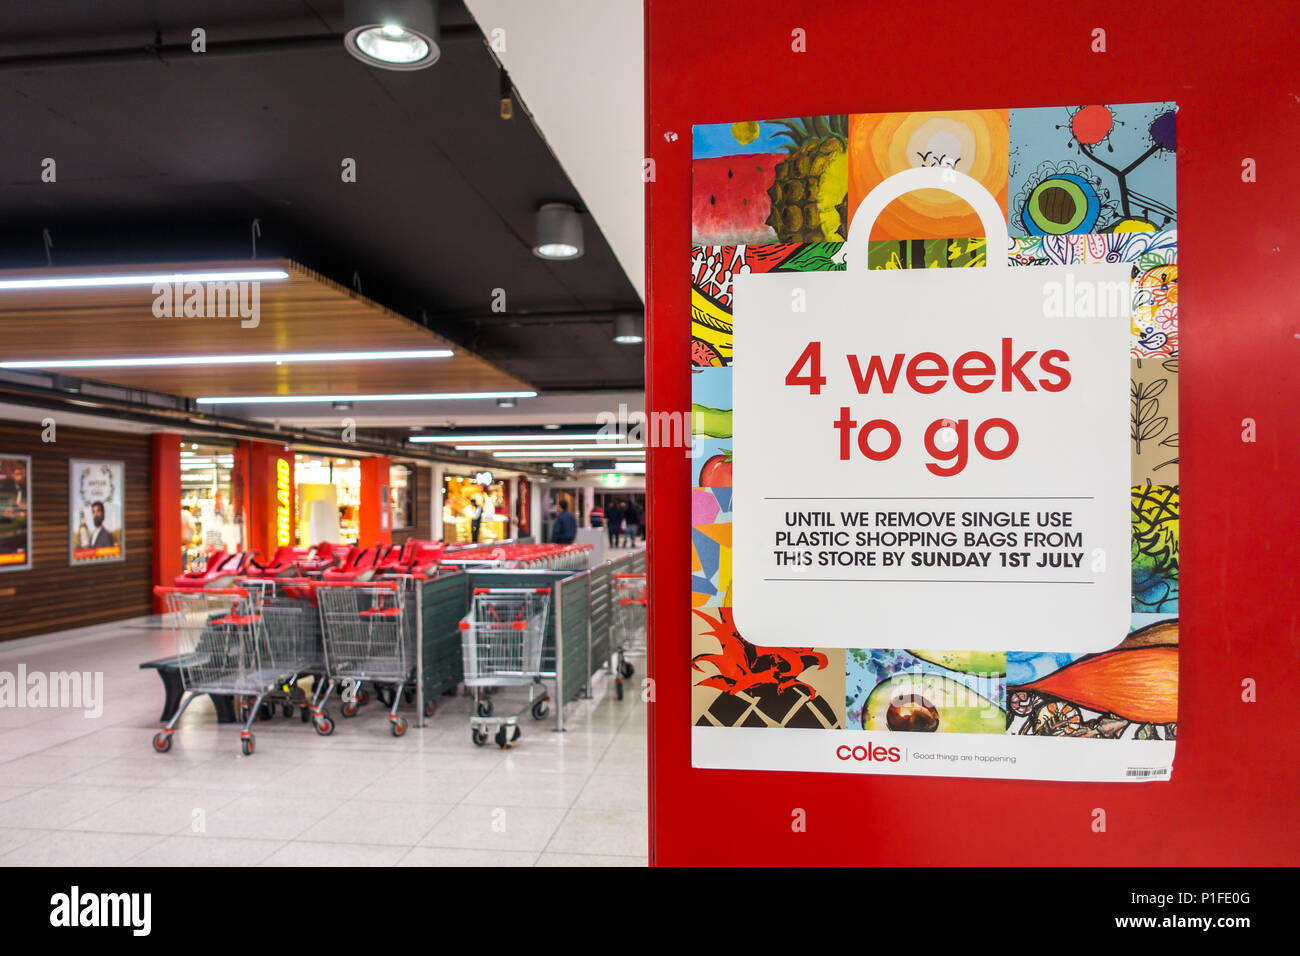 Plakat außerhalb Coles Supermarkt den Countdown für das Entfernen einzelner - Kunststoff Einkaufstaschen am 1. Juli 2018 bekannt geben zu können. Melbourne, Australien Stockfoto